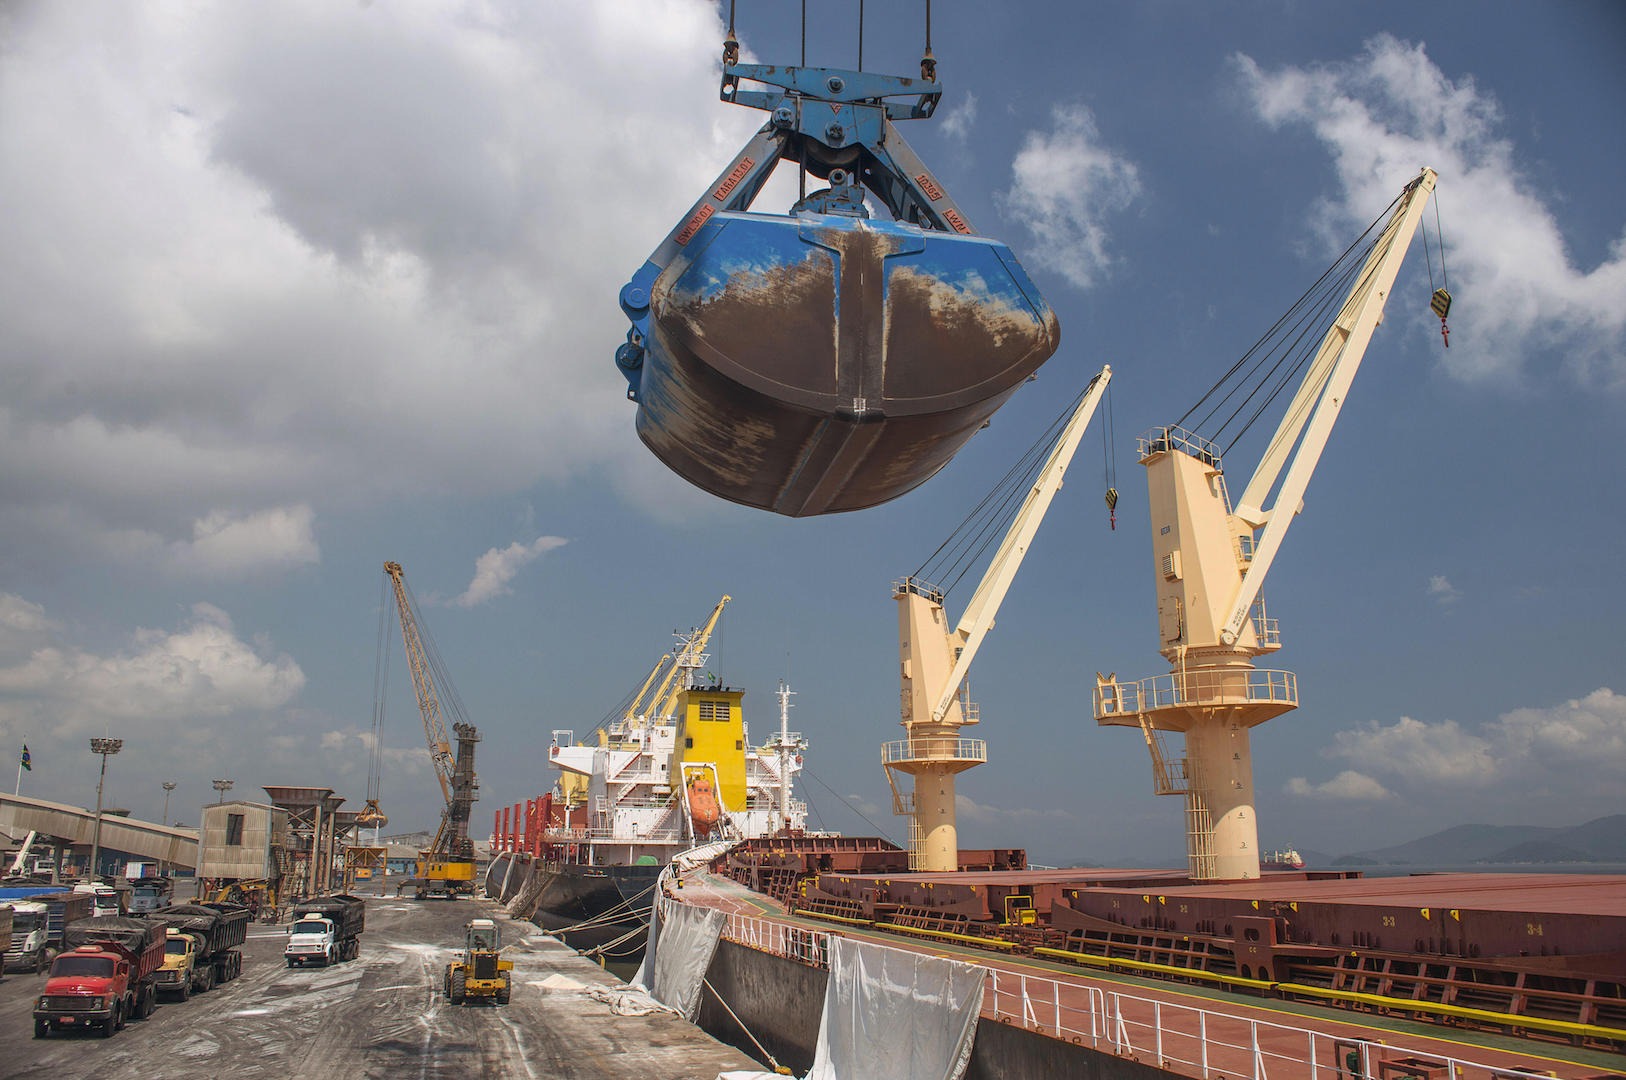 A crane unloads fertiliser at the port of Paranaguá, Southern Brazil